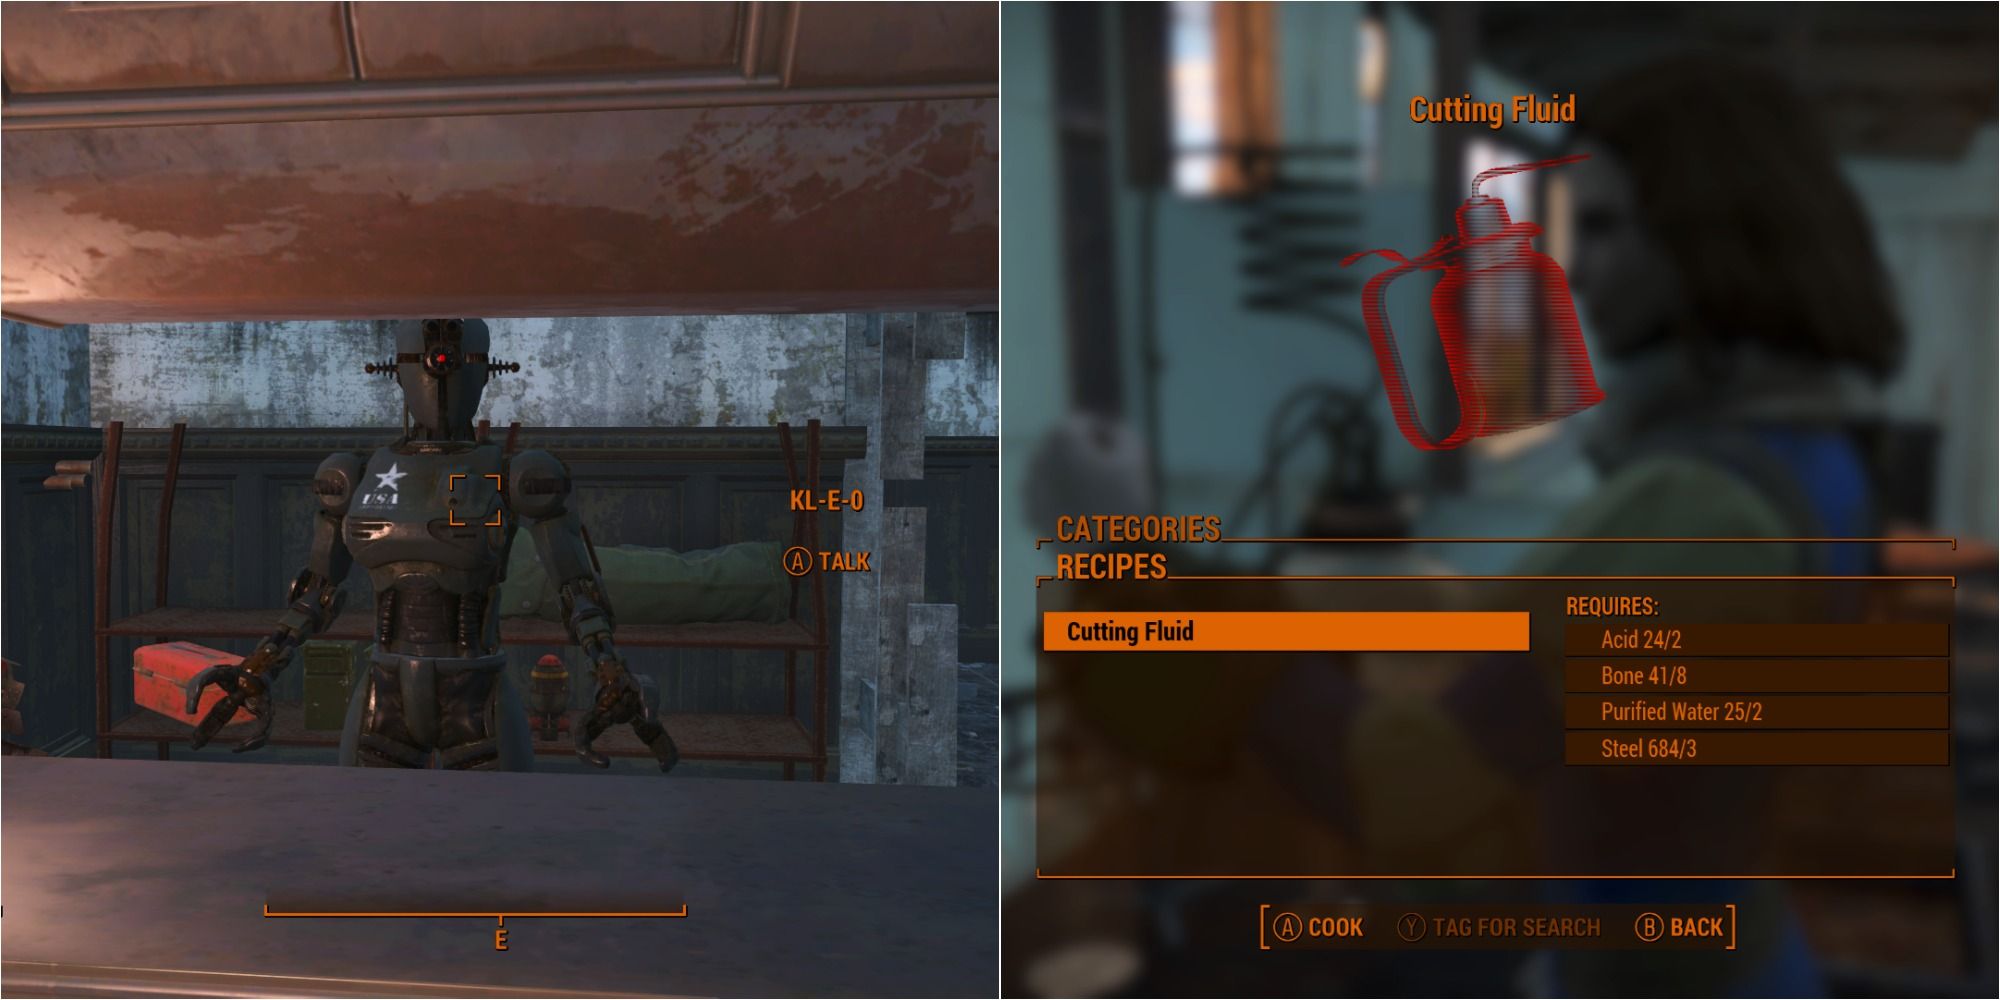 Fallout 4 Split Image Of KL-E-O and Cutting Fluid